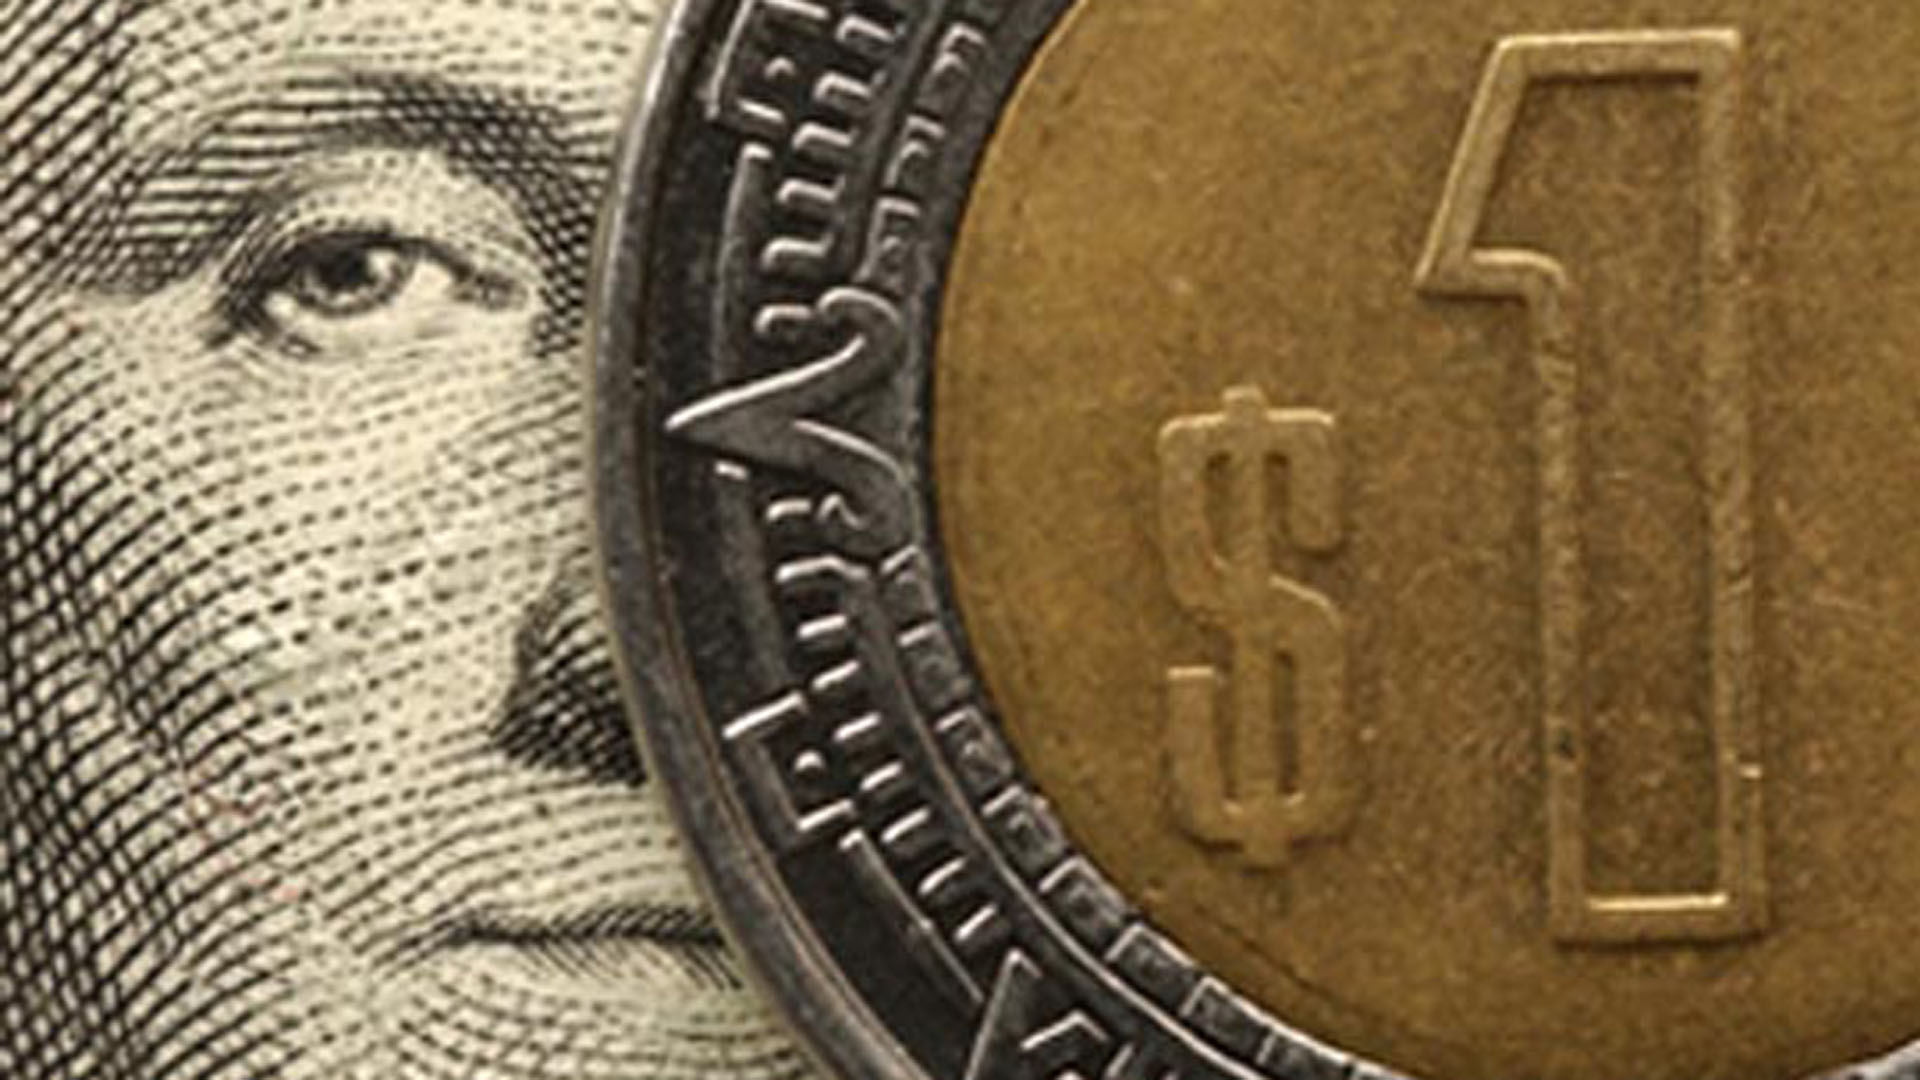  Tras el Brexit, el dólar se dispara a 20 pesos